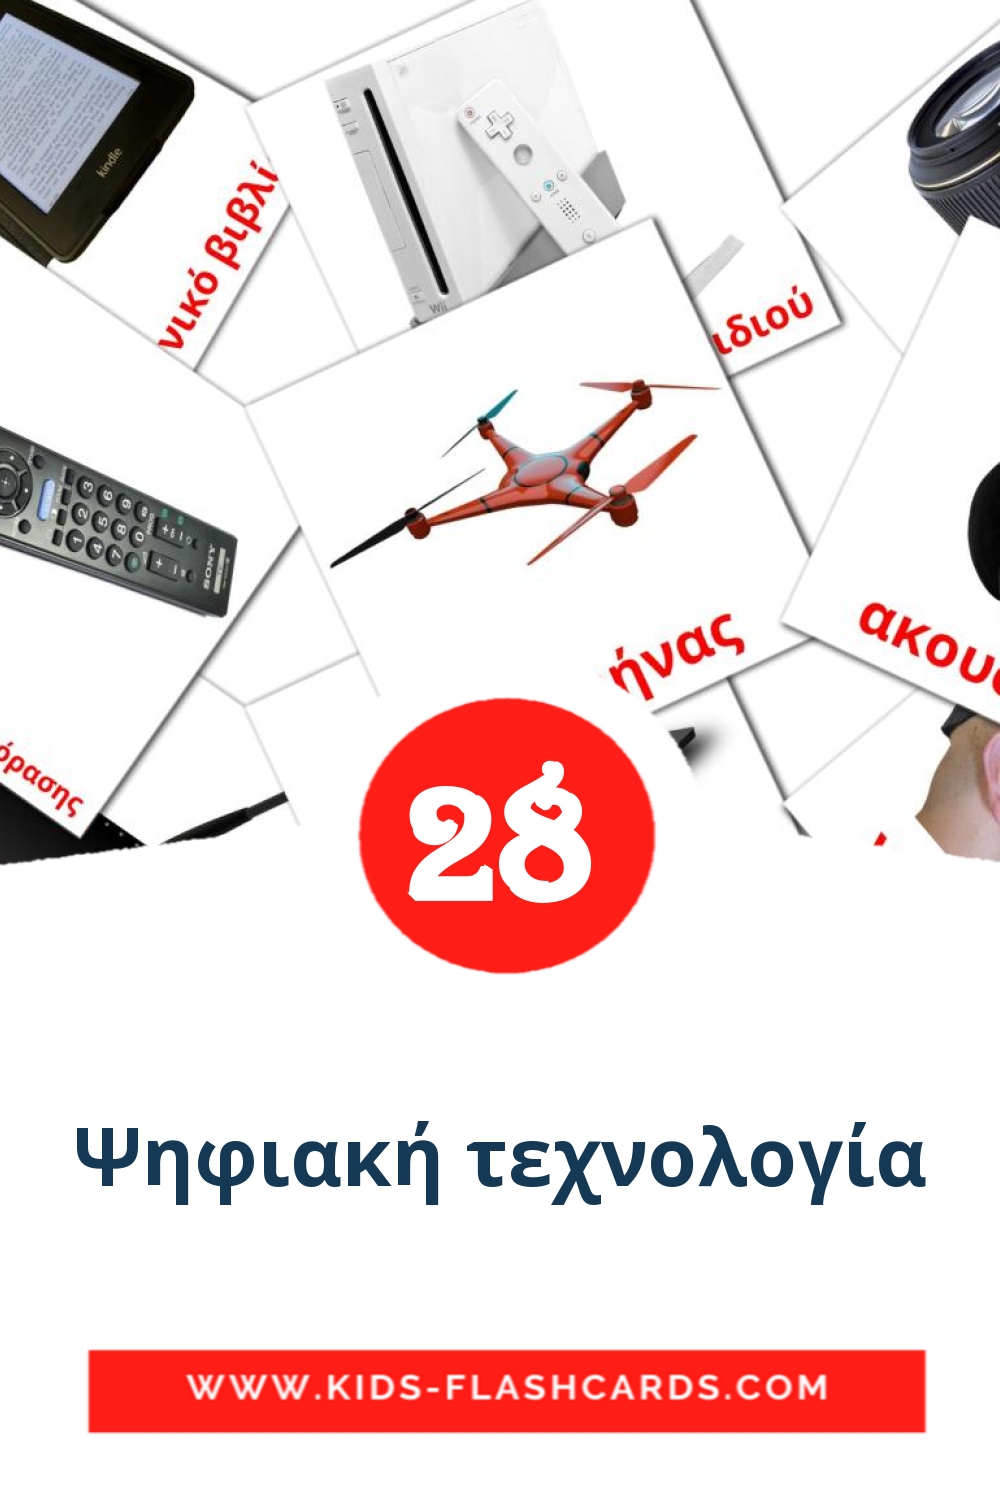 28 Cartões com Imagens de Ψηφιακή τεχνολογία para Jardim de Infância em grego